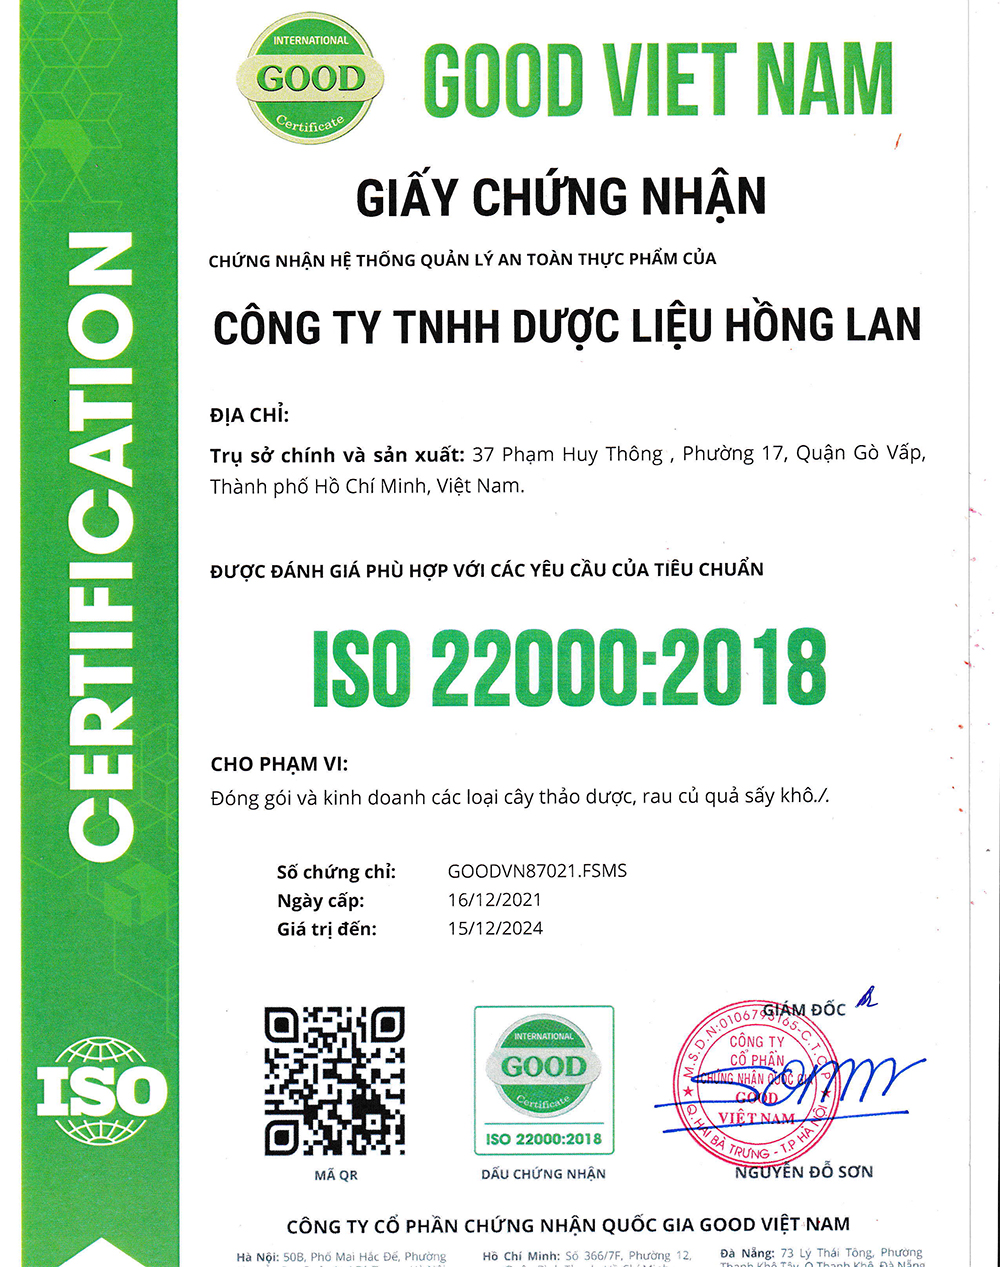 Trà túi lọc Bổ Thận Tráng Dương được sản xuất bởi Công ty TNHH Dược Liệu Hồng Lan theo hệ thống quản lý an toàn thực phẩm ISO 22000:2018 được cấp bởi công ty cổ phần chứng nhận Quốc Gia Good Việt Nam (Good Viet Nam Certification Joint Stock Company)